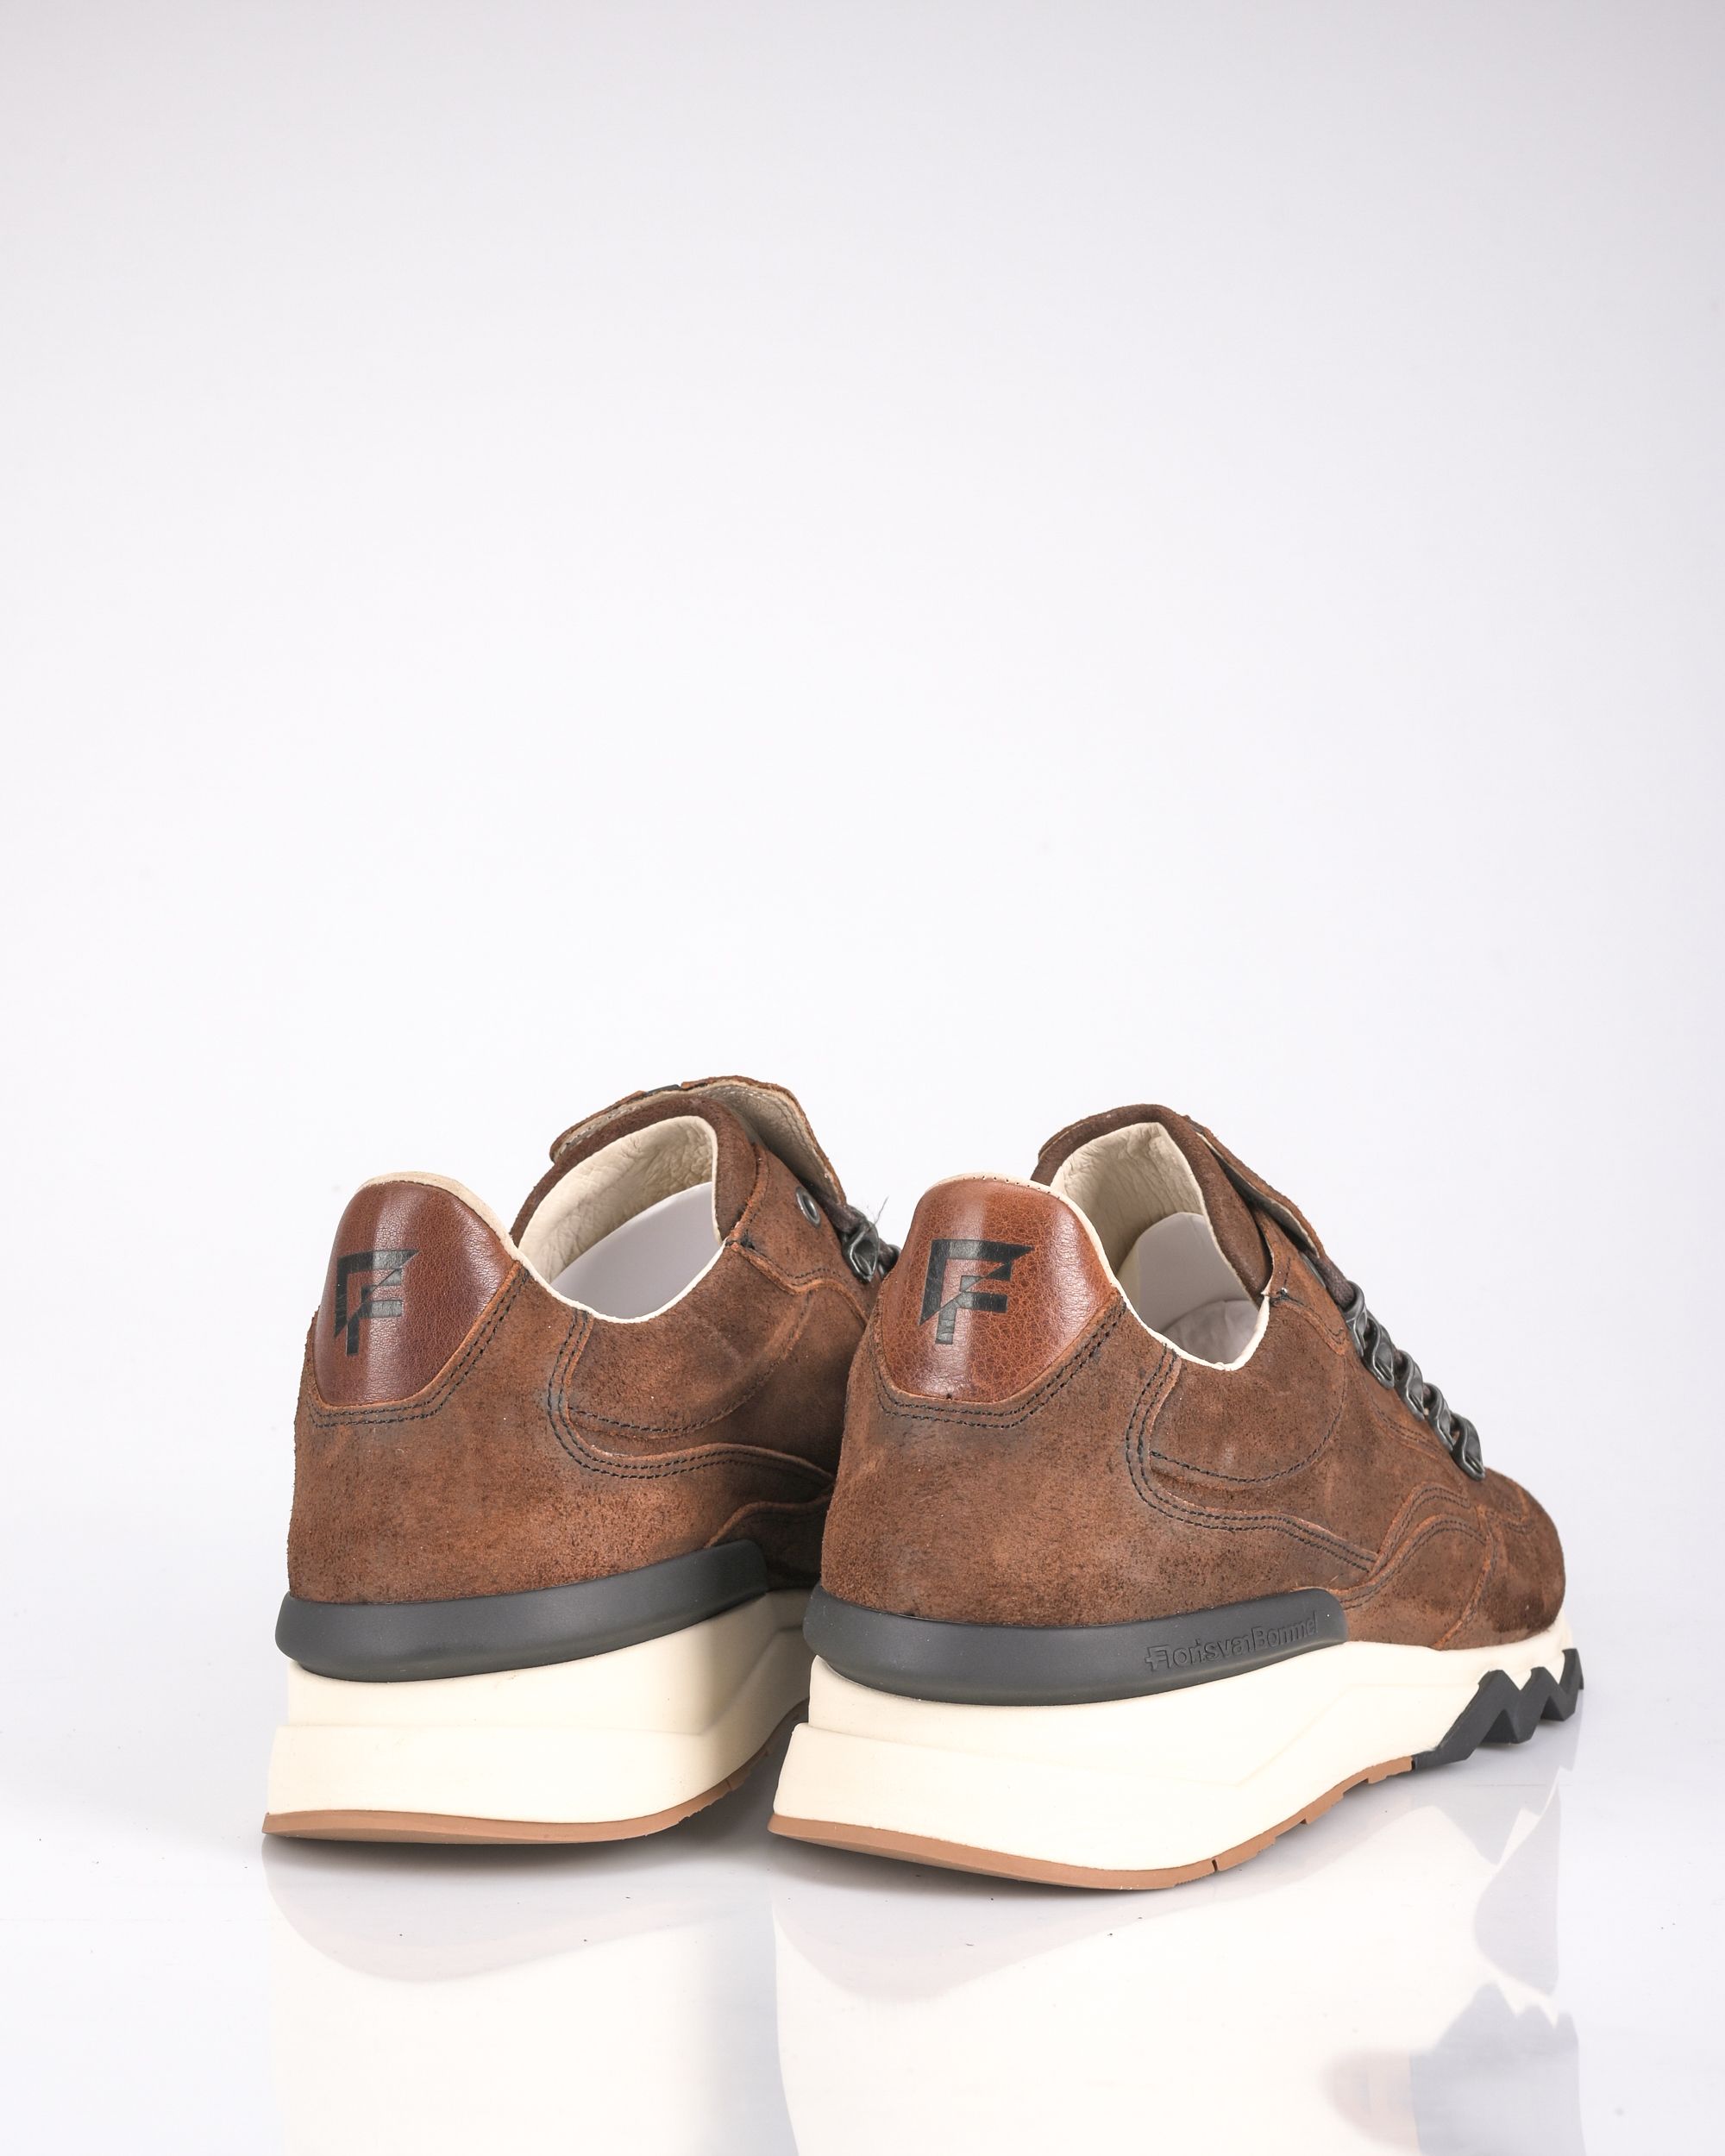 Floris van Bommel Sneakers | Shop nu - OFM.